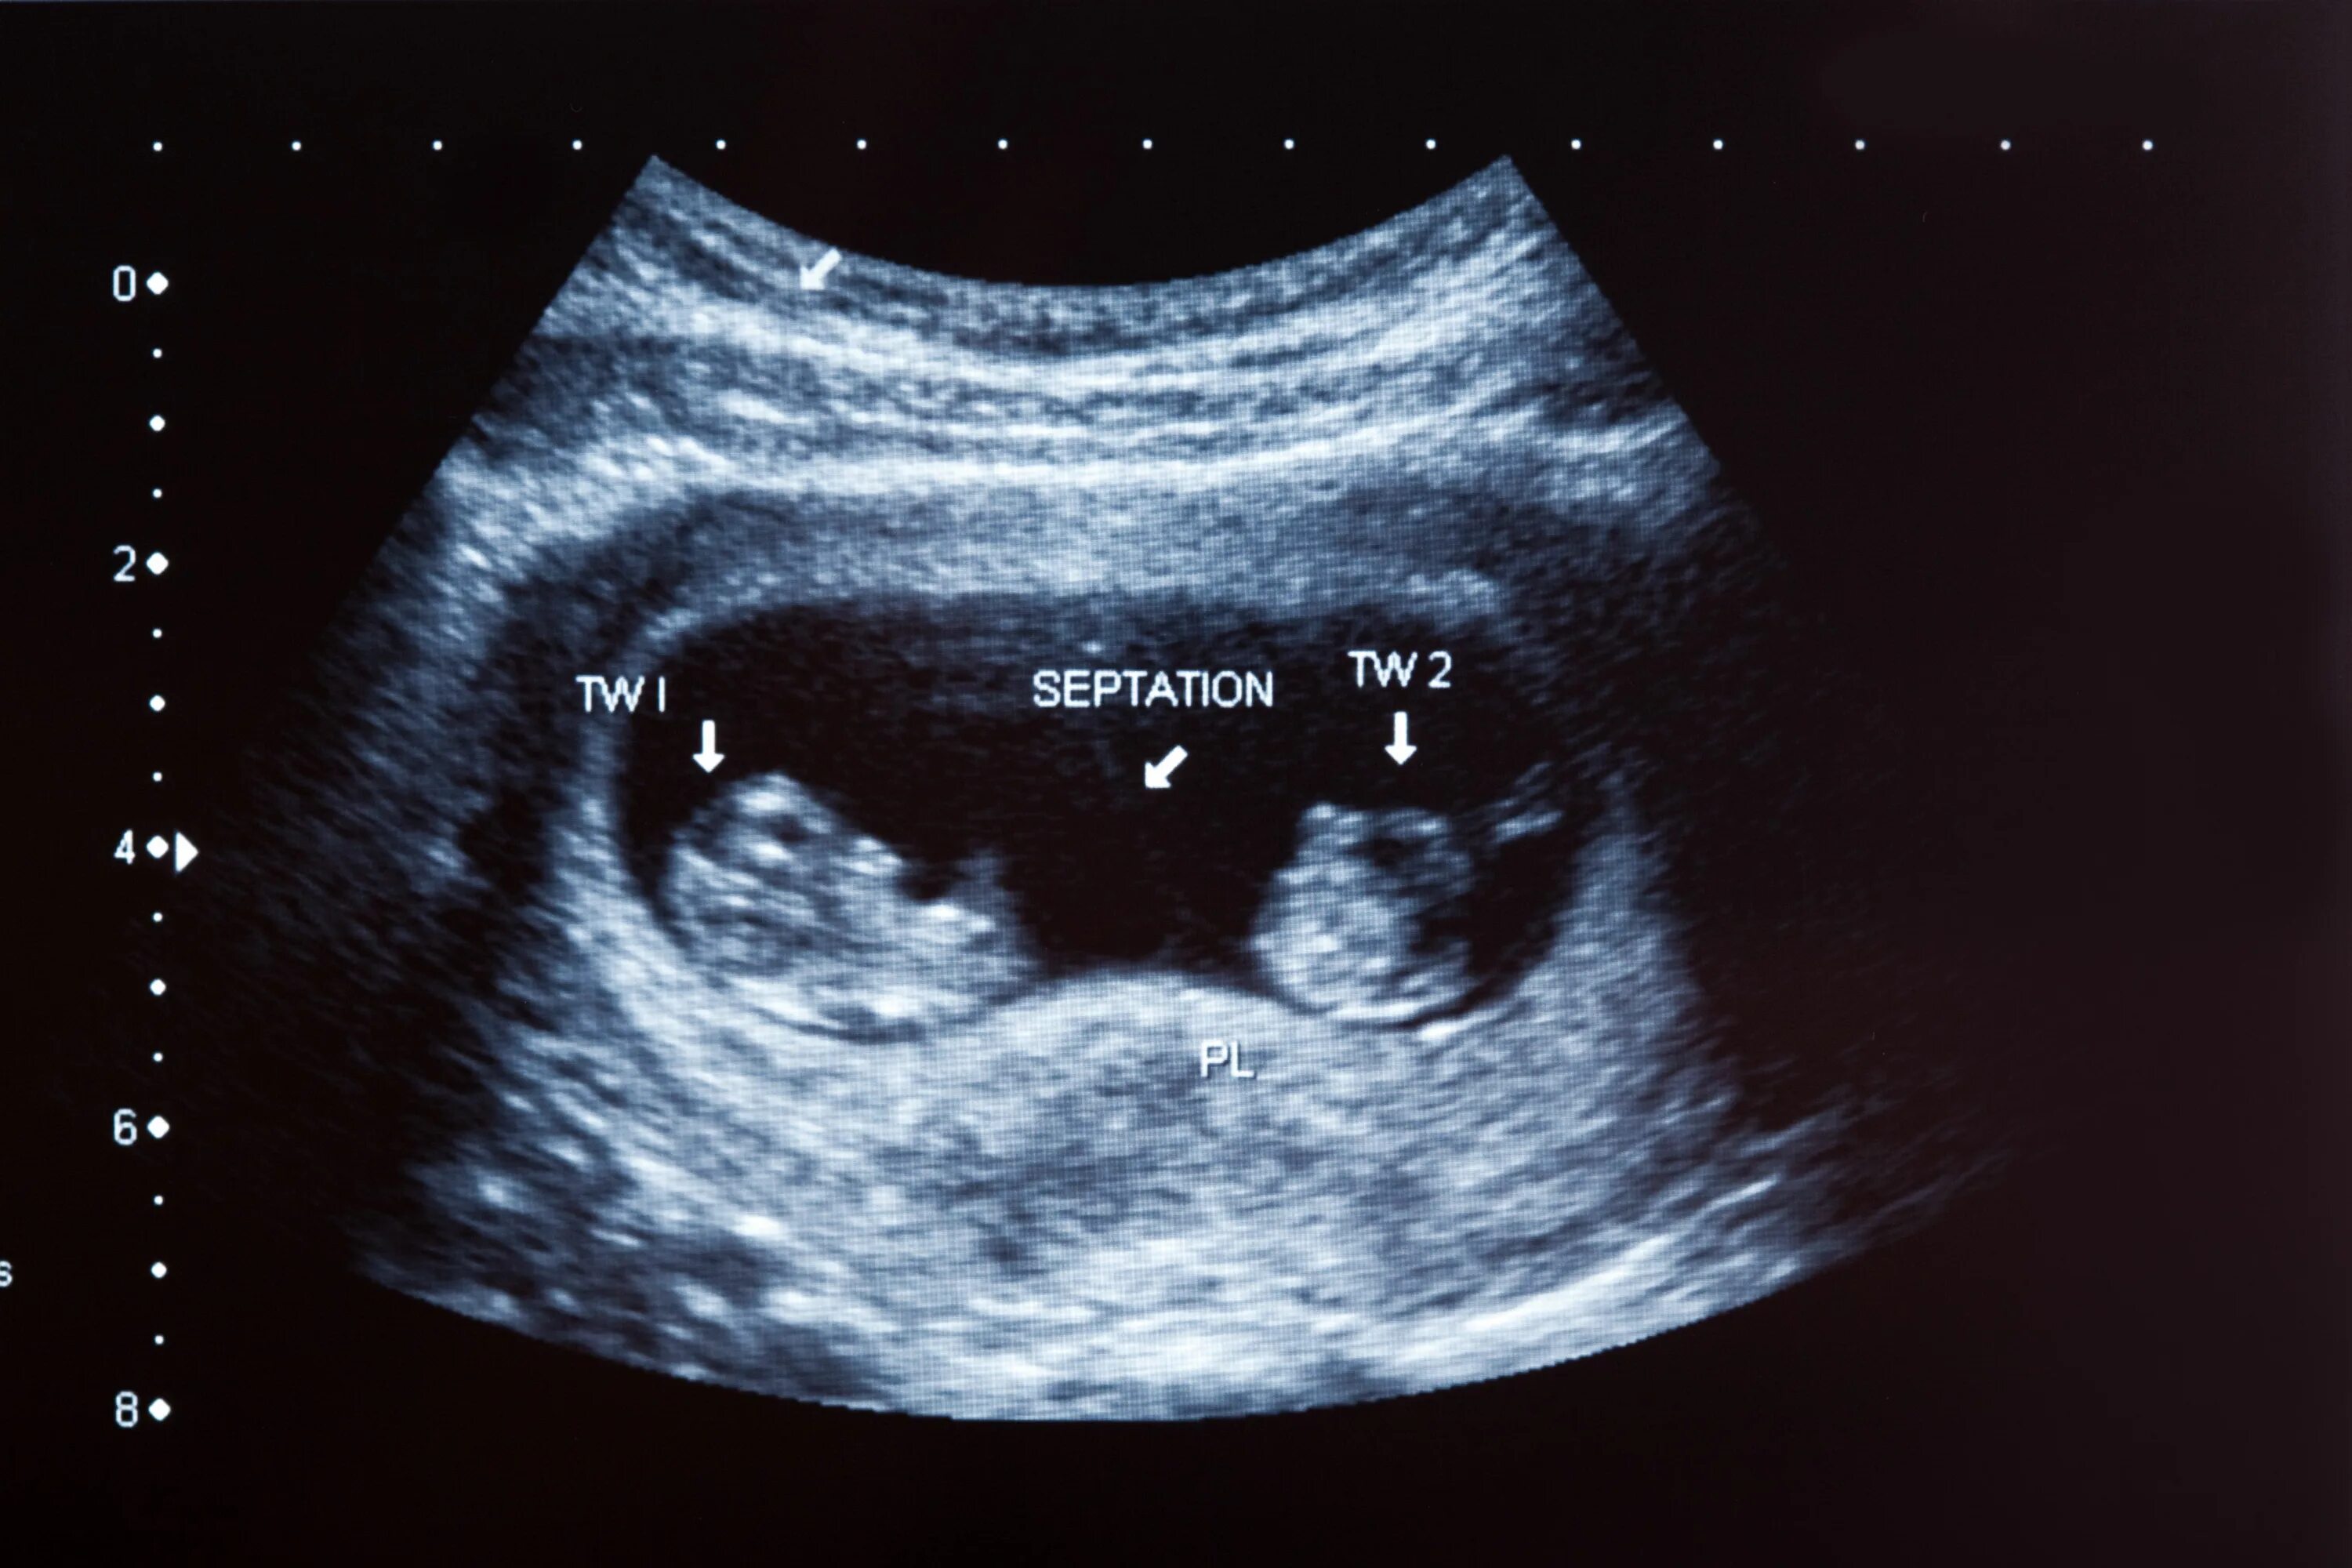 Замершая 14 недель. УЗИ 12 недель беременности двойня. УЗИ 10 недель беременности двойня. УЗИ 8 недель беременности двойня. УЗИ 20 недель беременности многоплодная беременность.